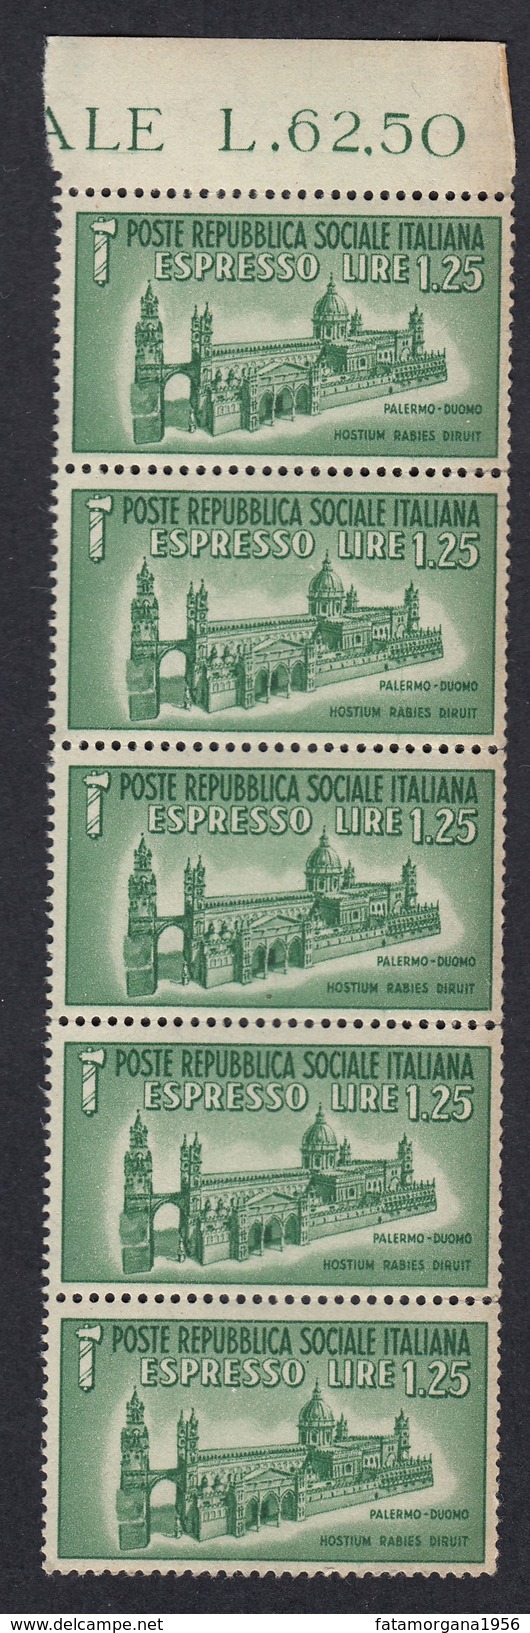 ITALIA - ITALY - Repubblica Sociale - 1944 - Lotto 5 Valori Unificato E23, Nuovi MNH, Uniti Fra Loro. - Exprespost